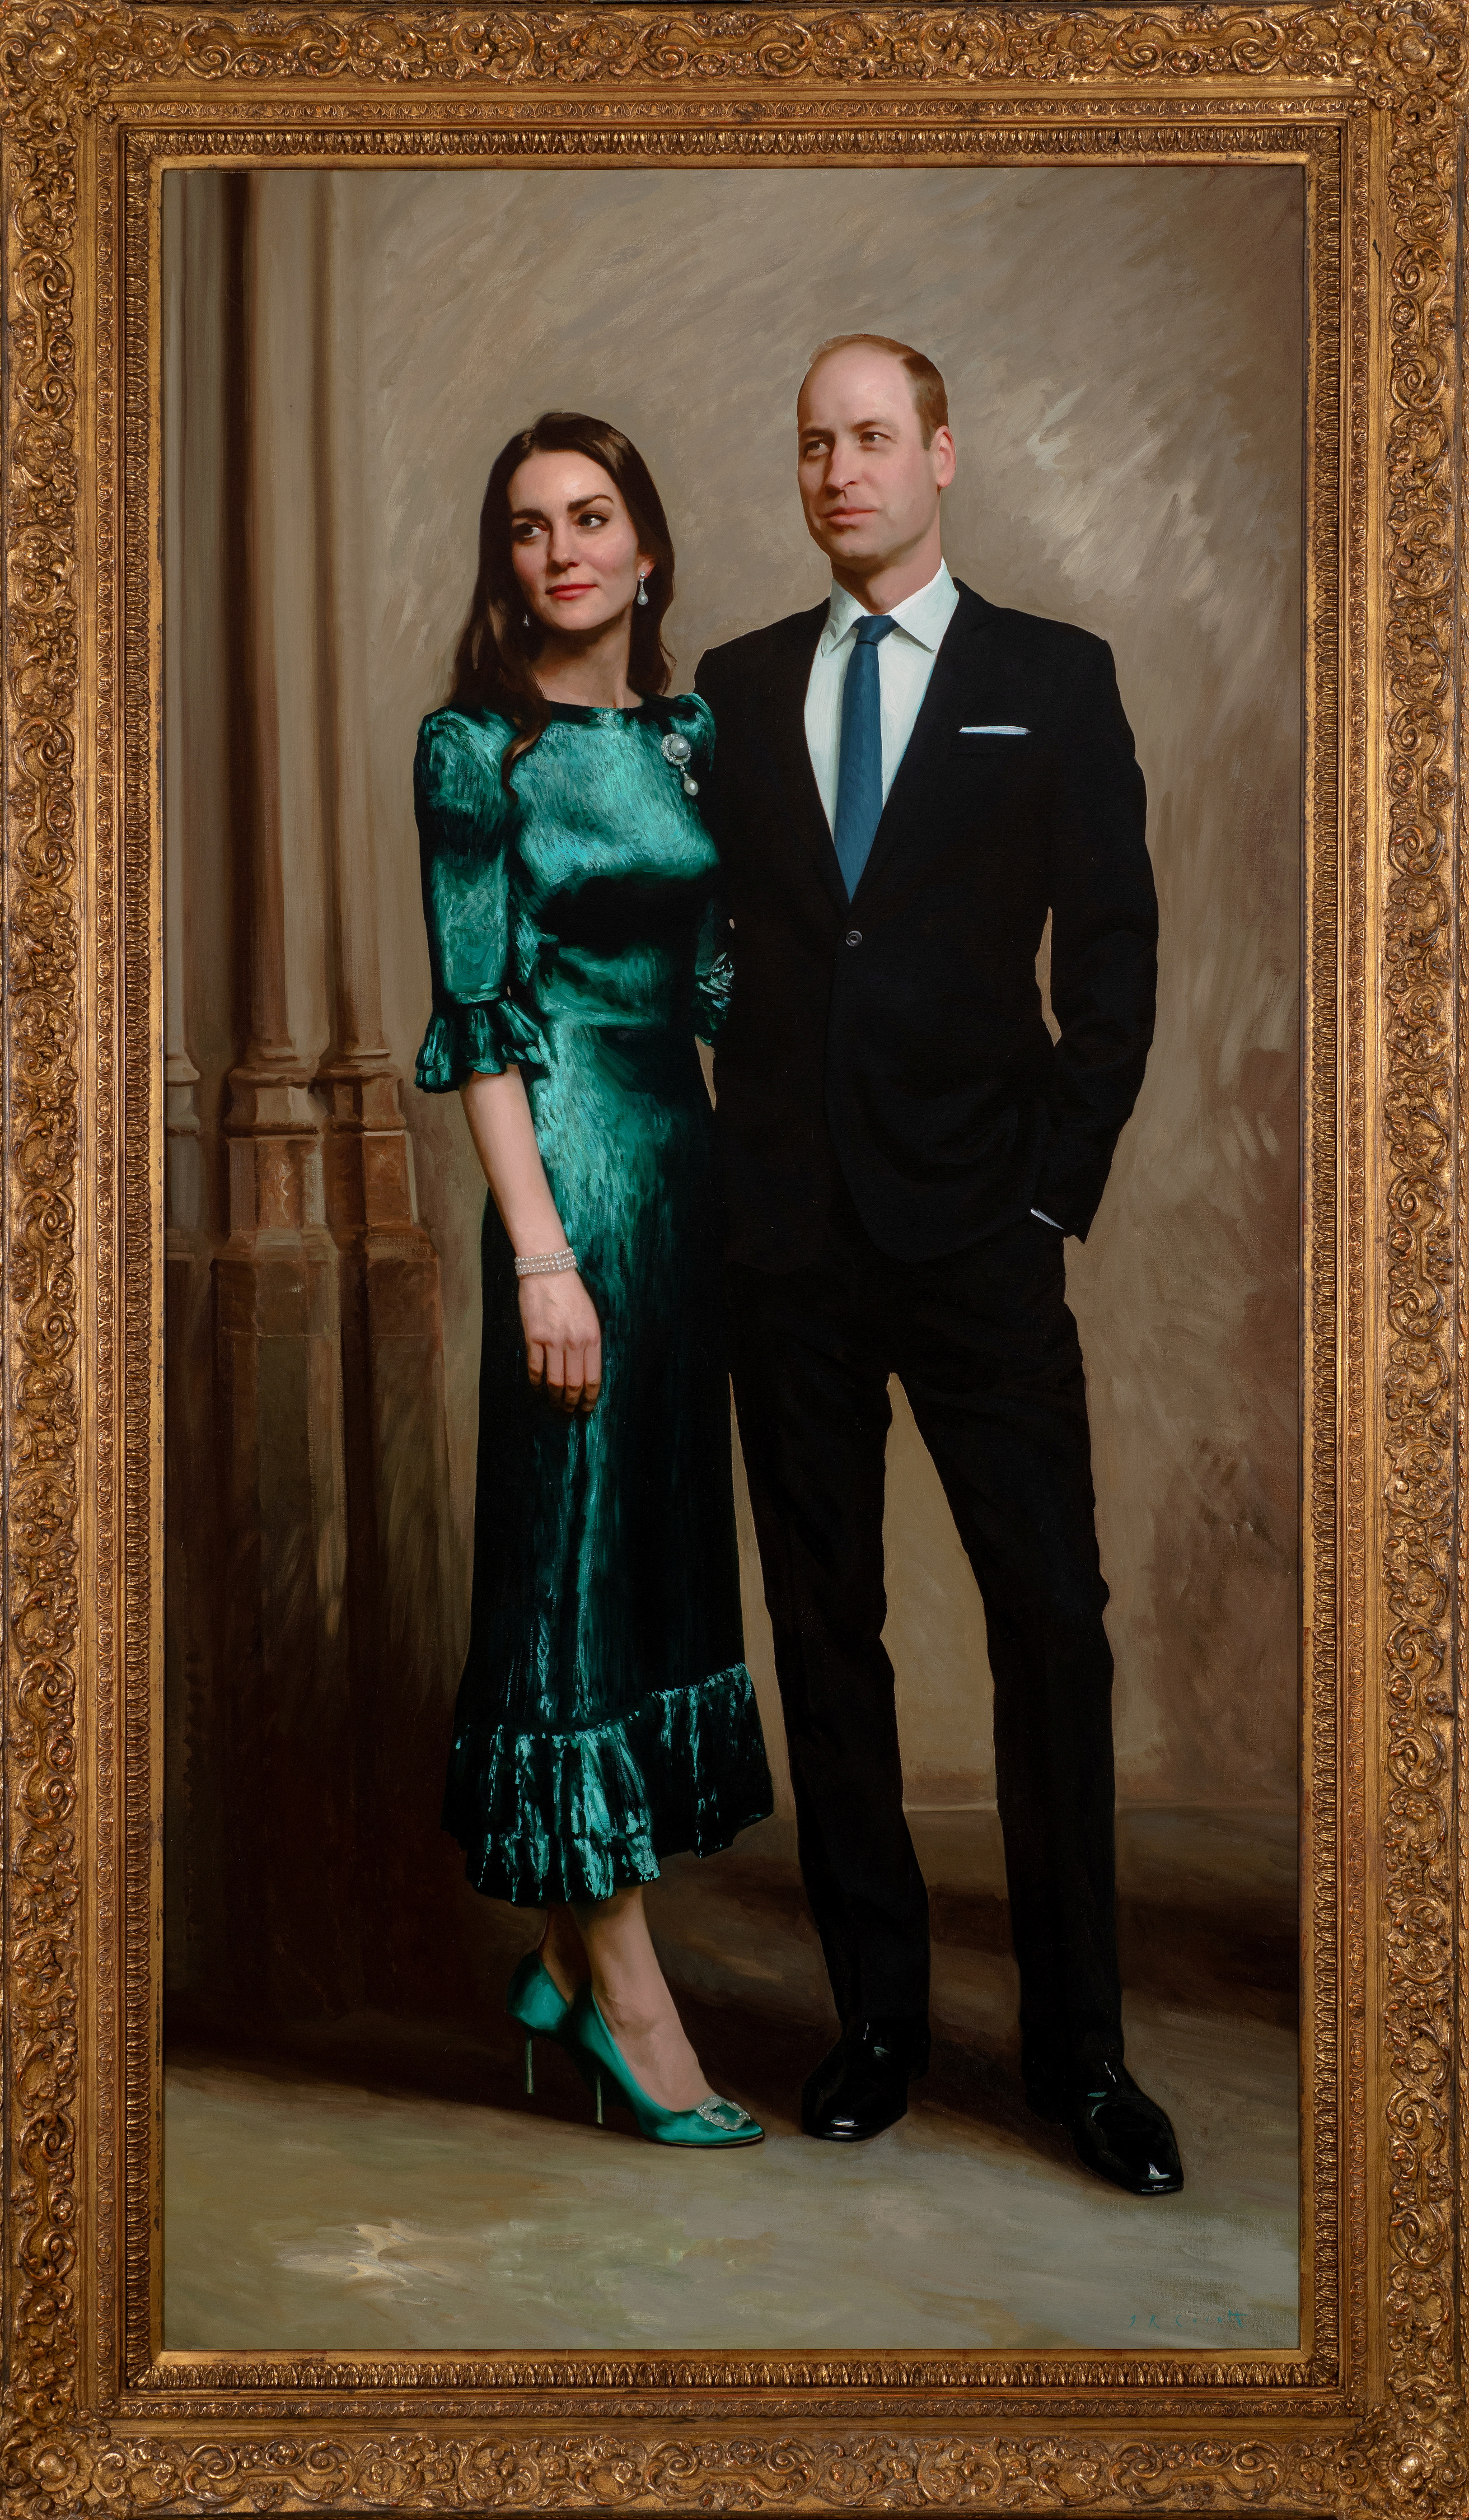 Un nuevo retrato del príncipe William y Kate Middleton, duque y duquesa de Cambridge de Gran Bretaña, pintado por el retratista británico Jamie Coreth (Reuters)